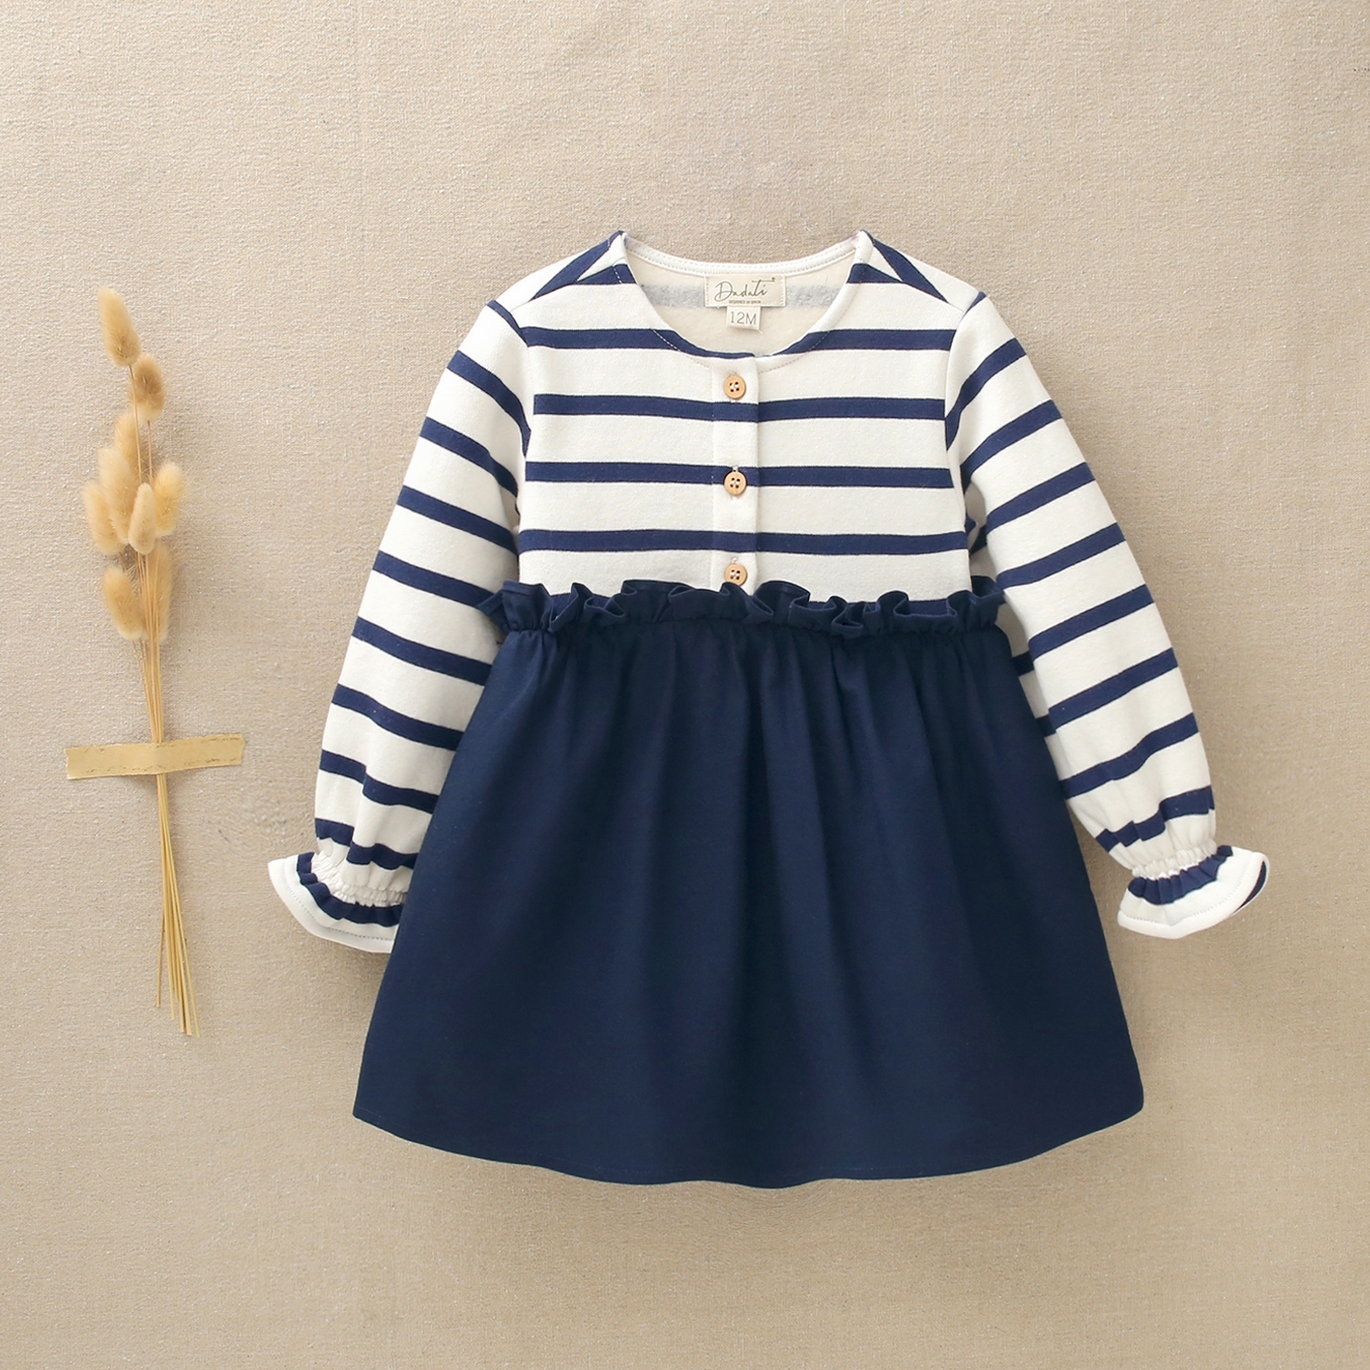 Imagen de Vestido de bebé niña combinado de rayas marineras con tejido liso azul